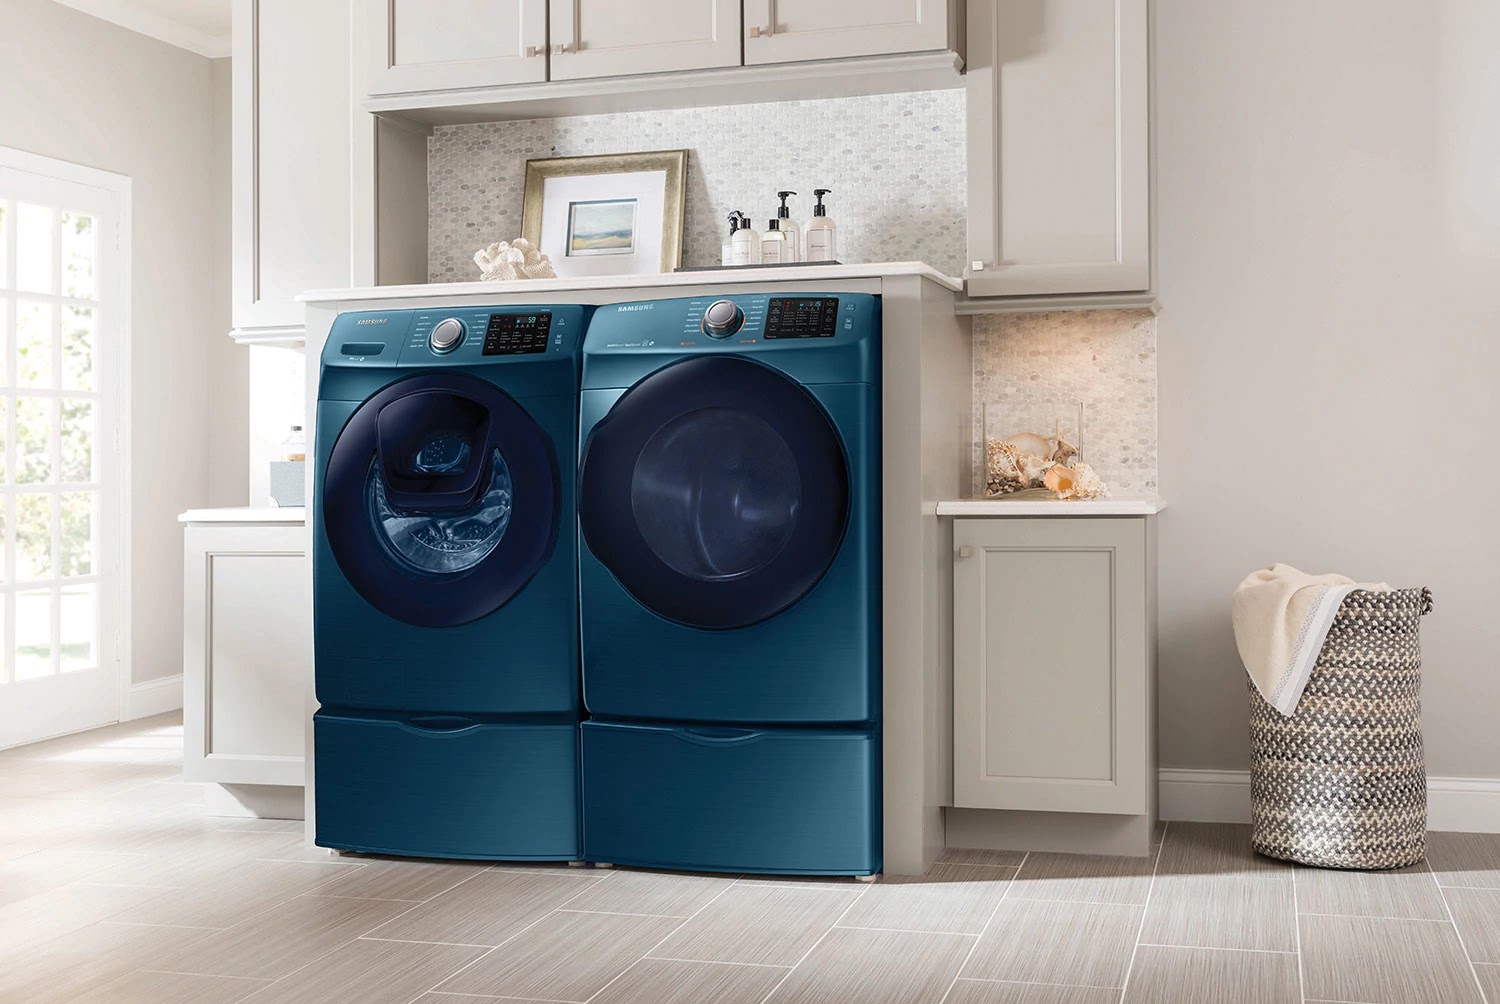 Washer. Samsung пьедестал для стиральной машины. Washer LG Home. Сапфир бытовая техника. Laundy.